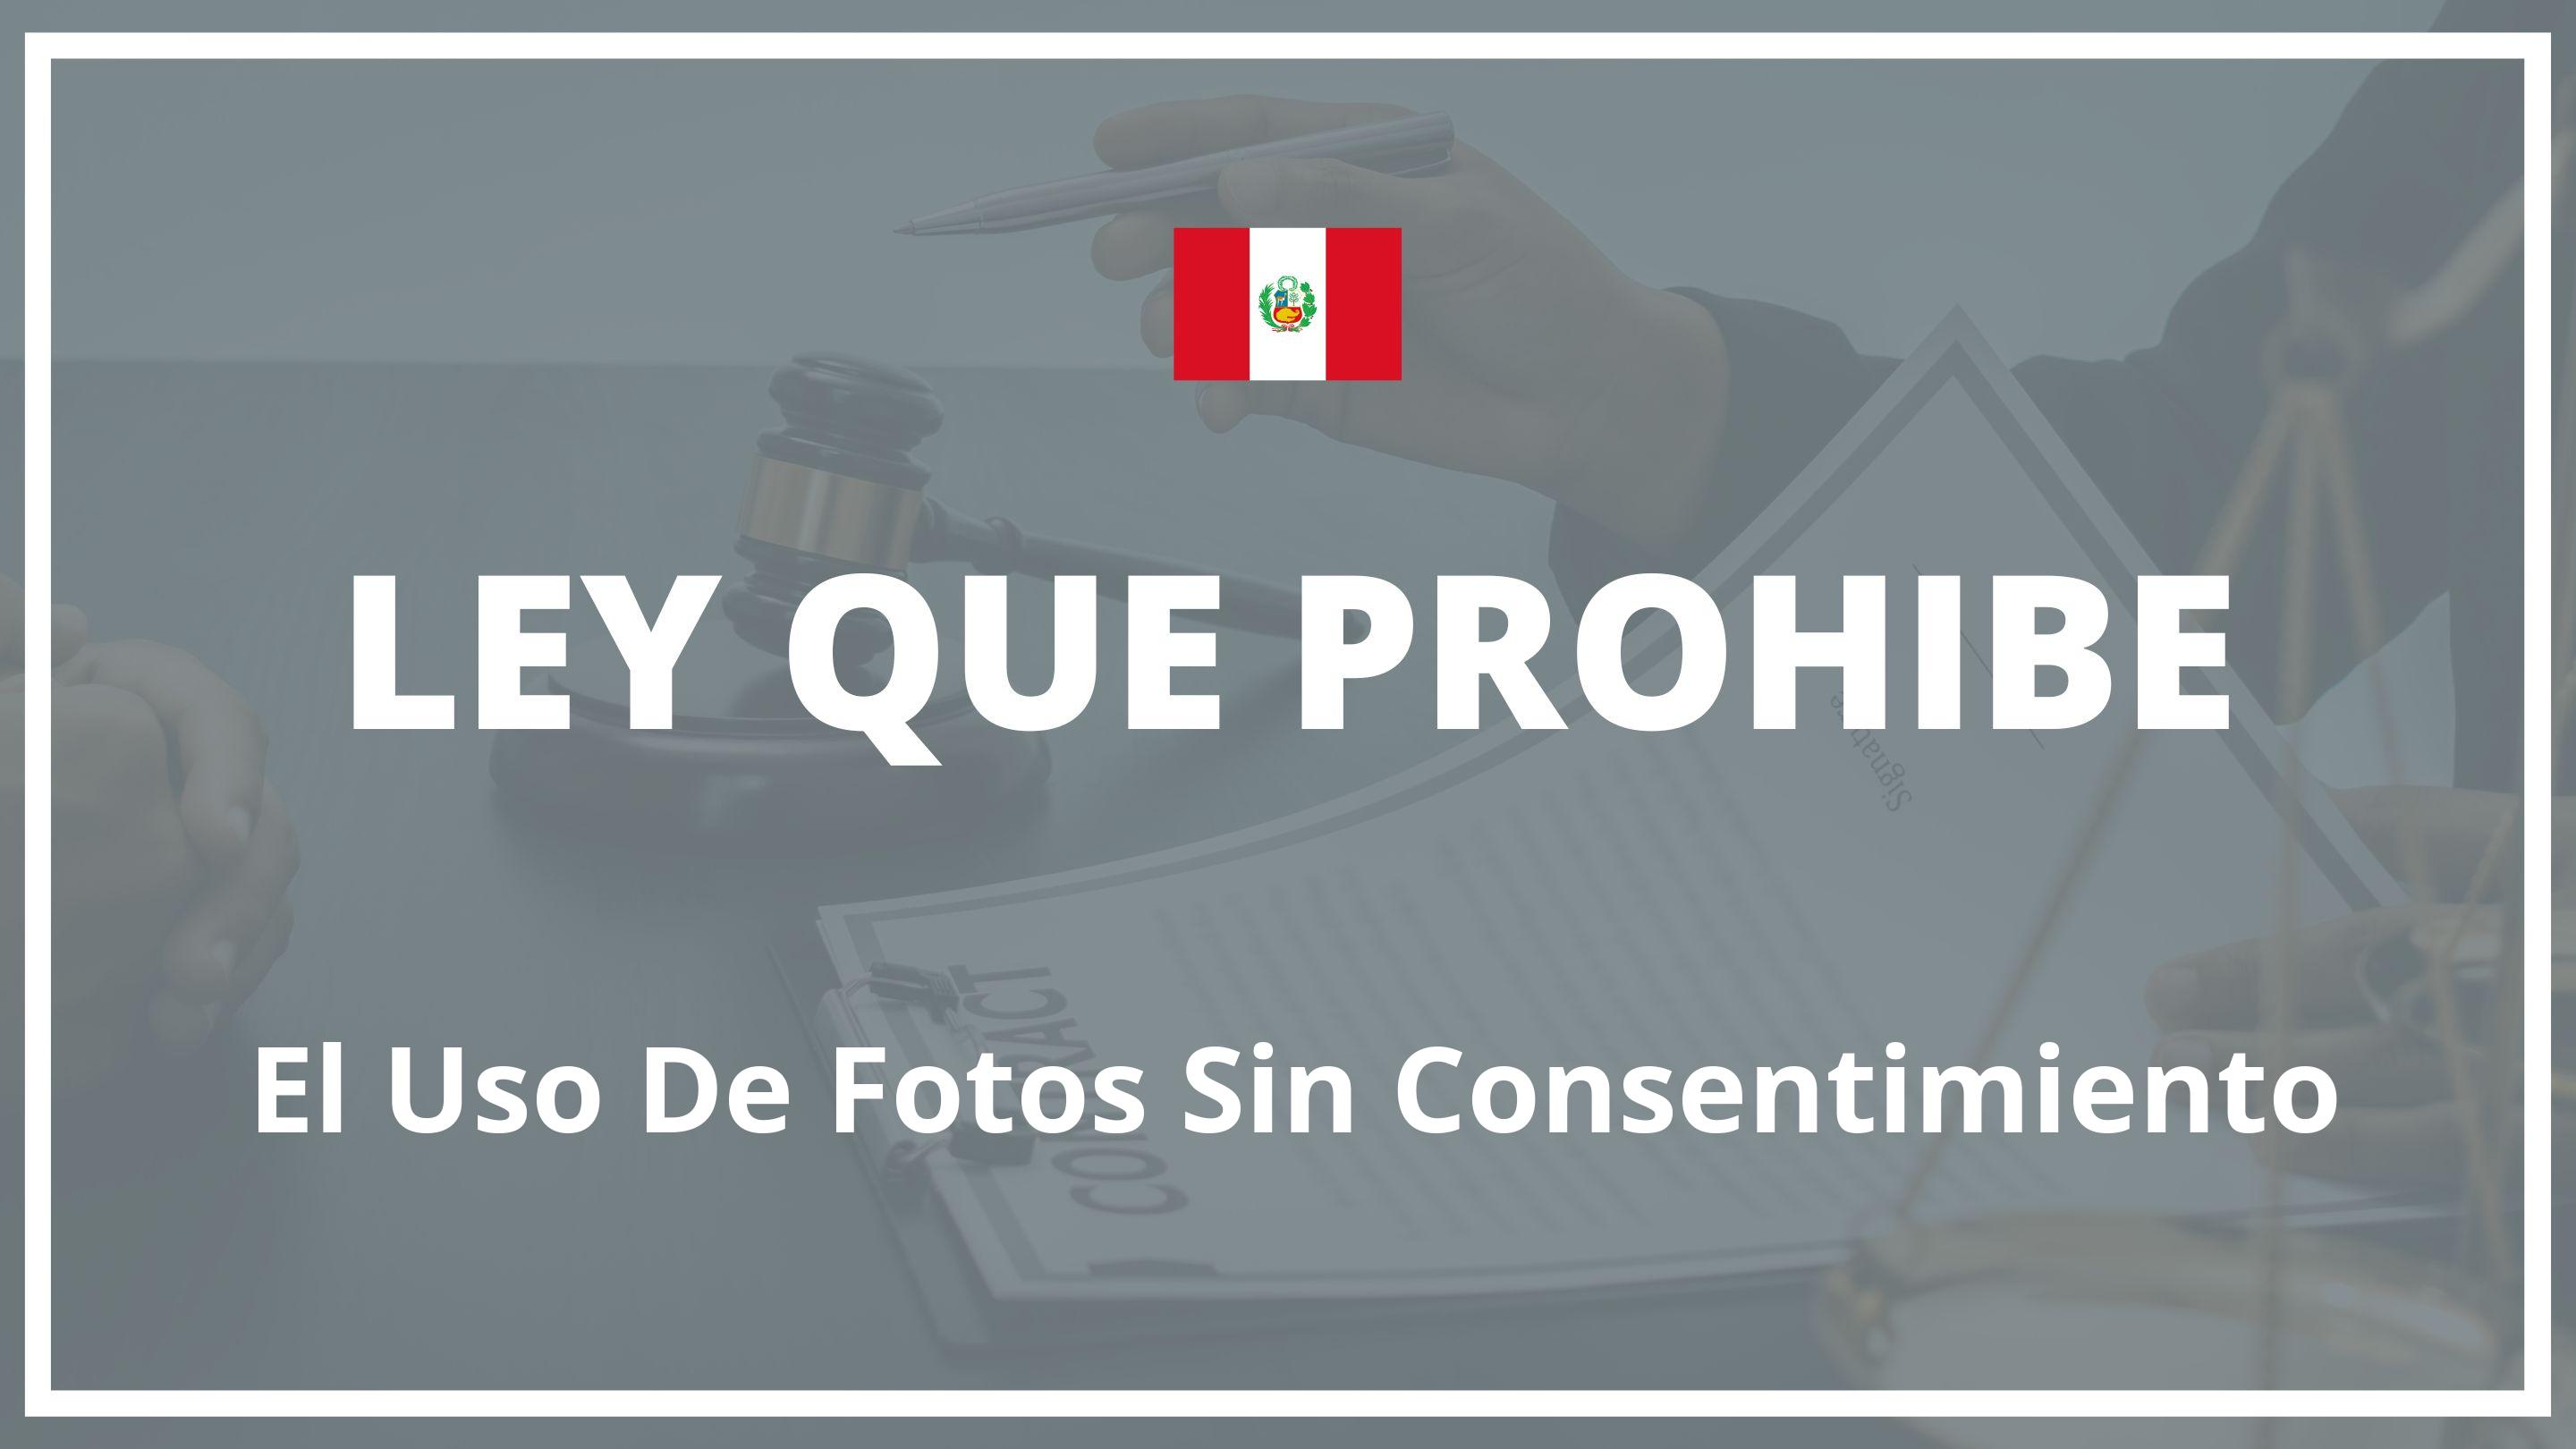 Ley que prohibe el uso de fotos sin consentimiento Peru